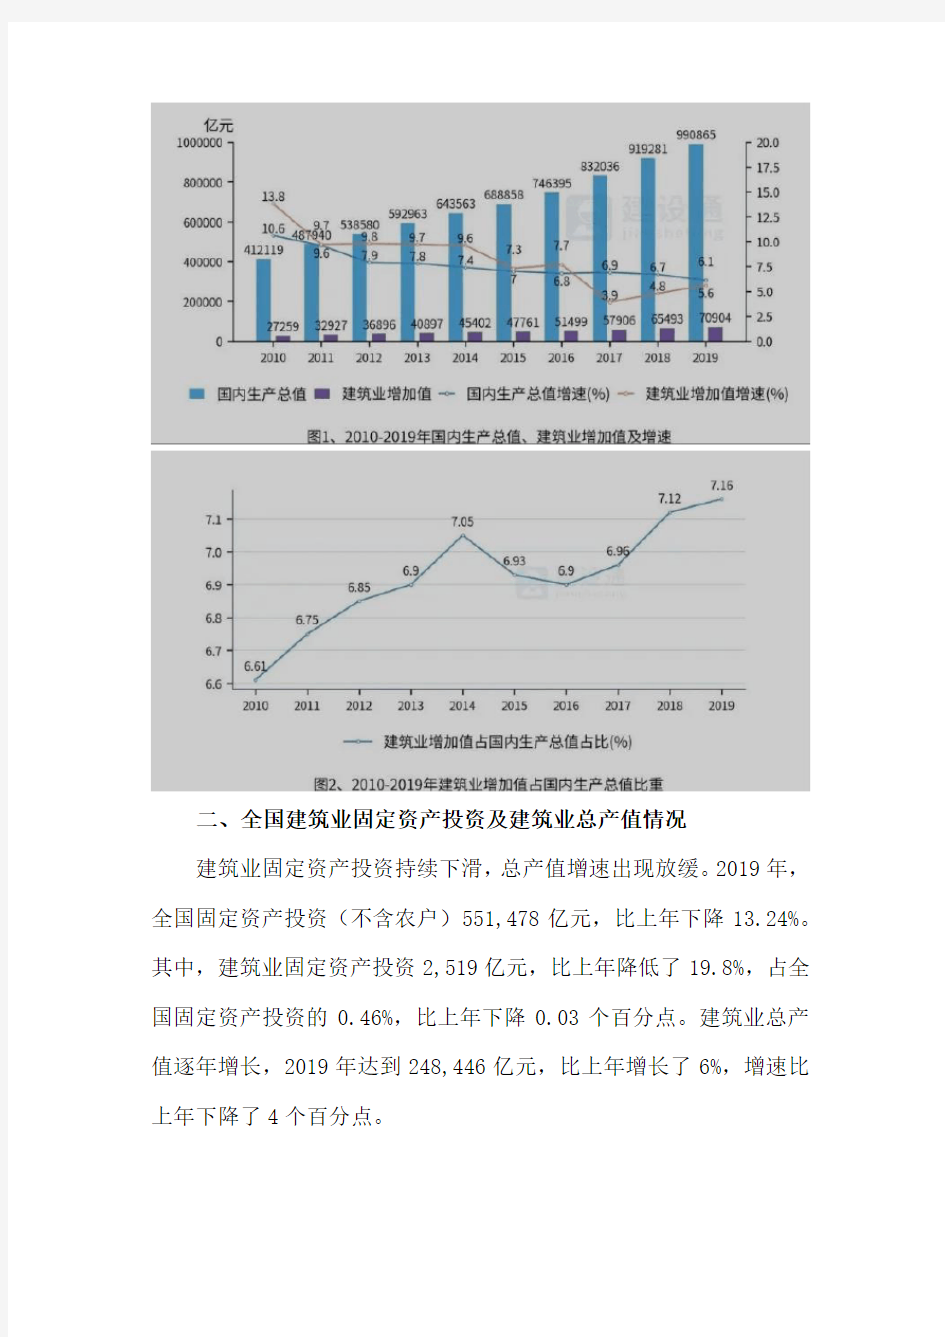 2019年中国建筑业发展分析报告(完整版)